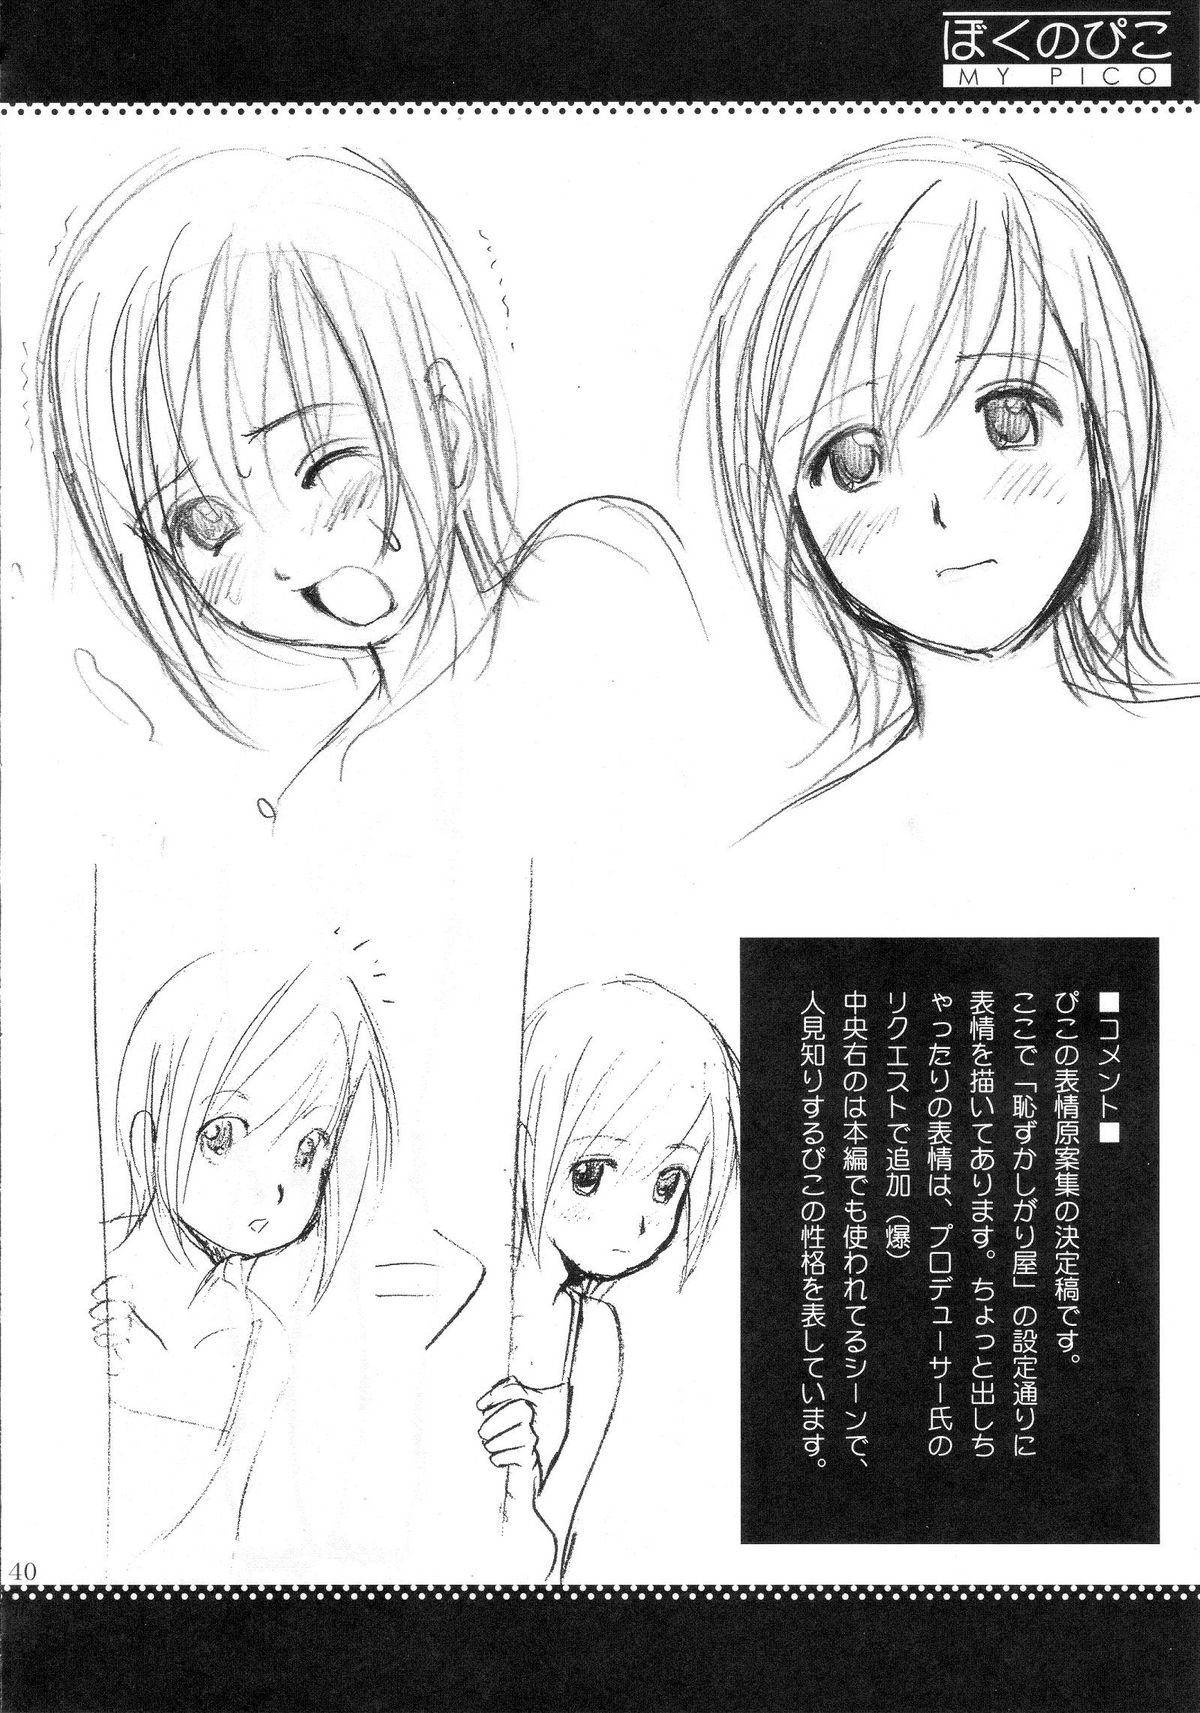 (COMIC1) [Saigado] Boku no Pico Comic + Koushiki Character Genanshuu (Boku no Pico) page 38 full